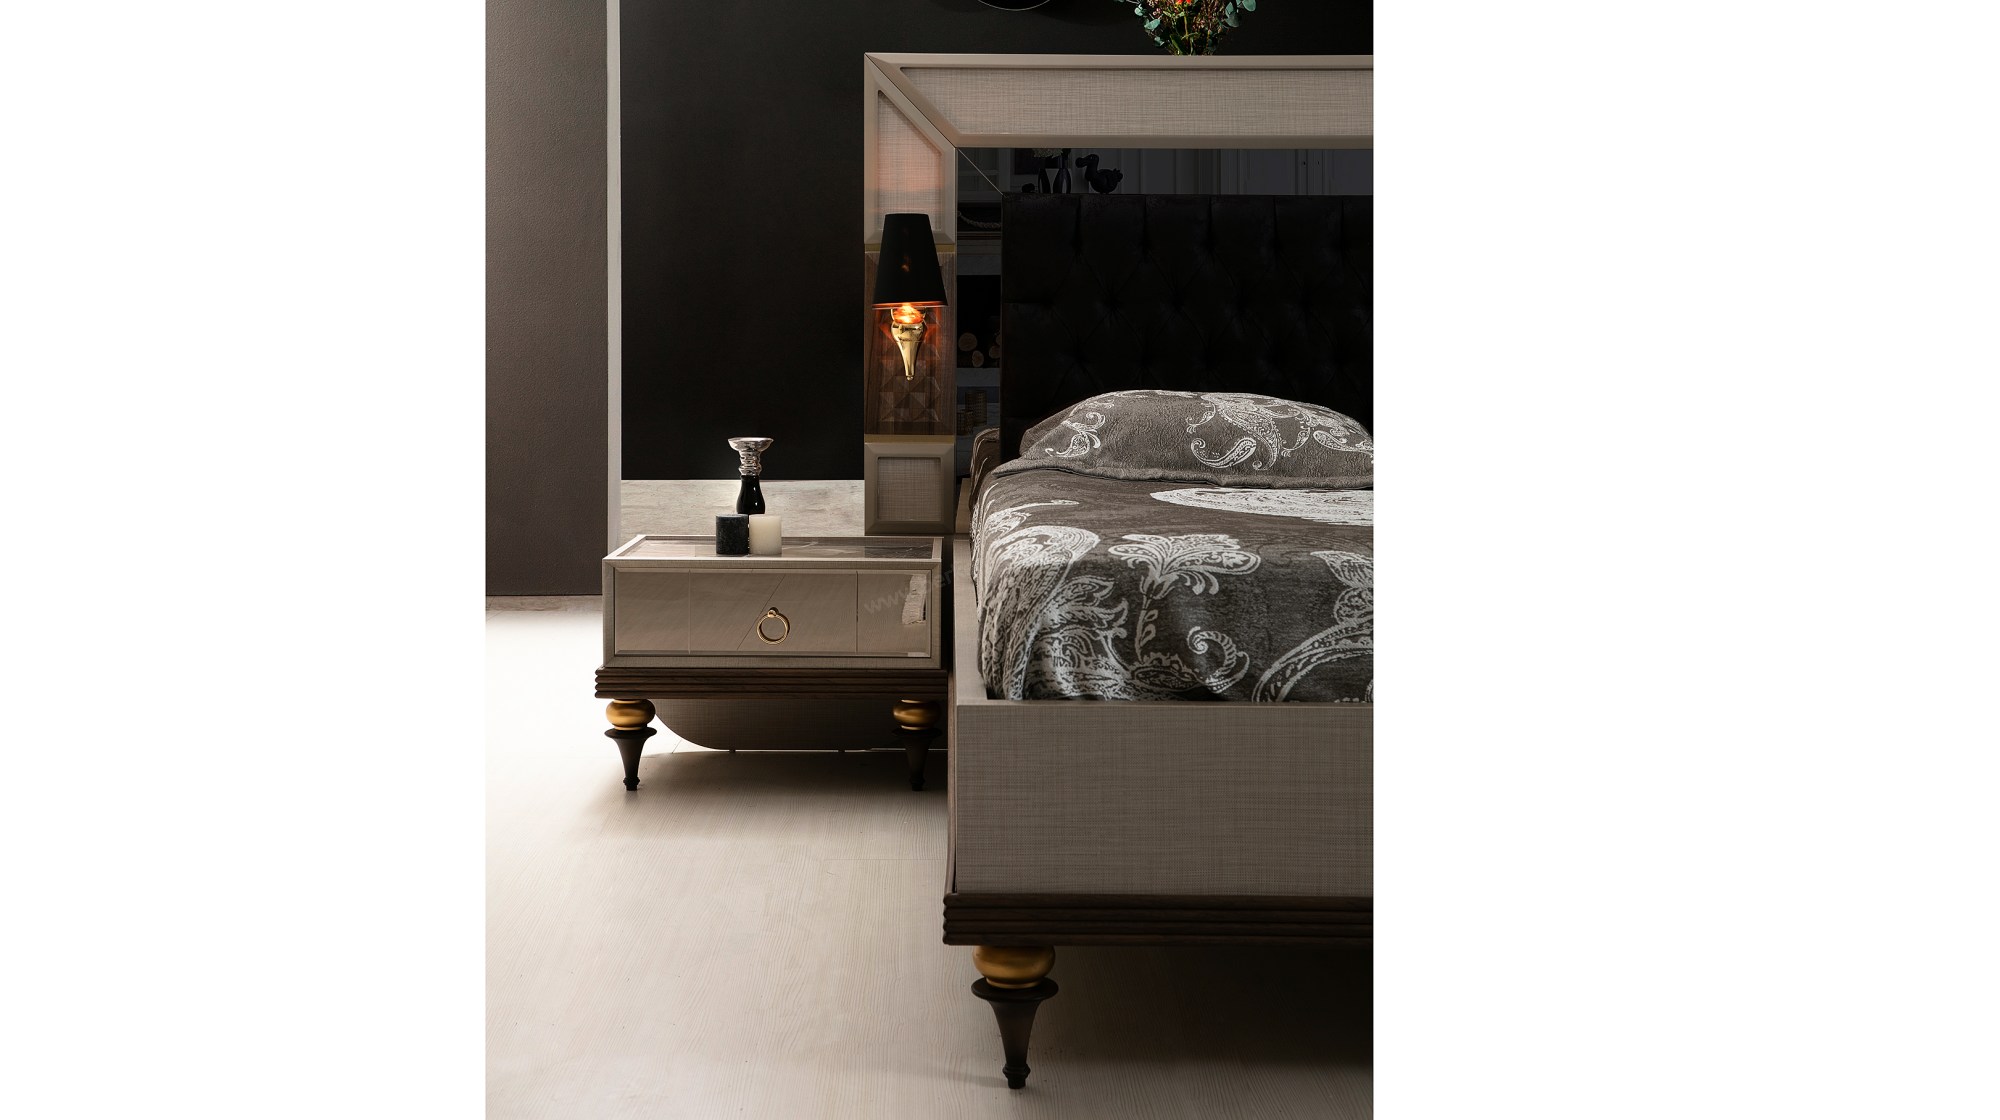 Melek Luxury Yatak Odası TakımıLuxury Yatak Odası